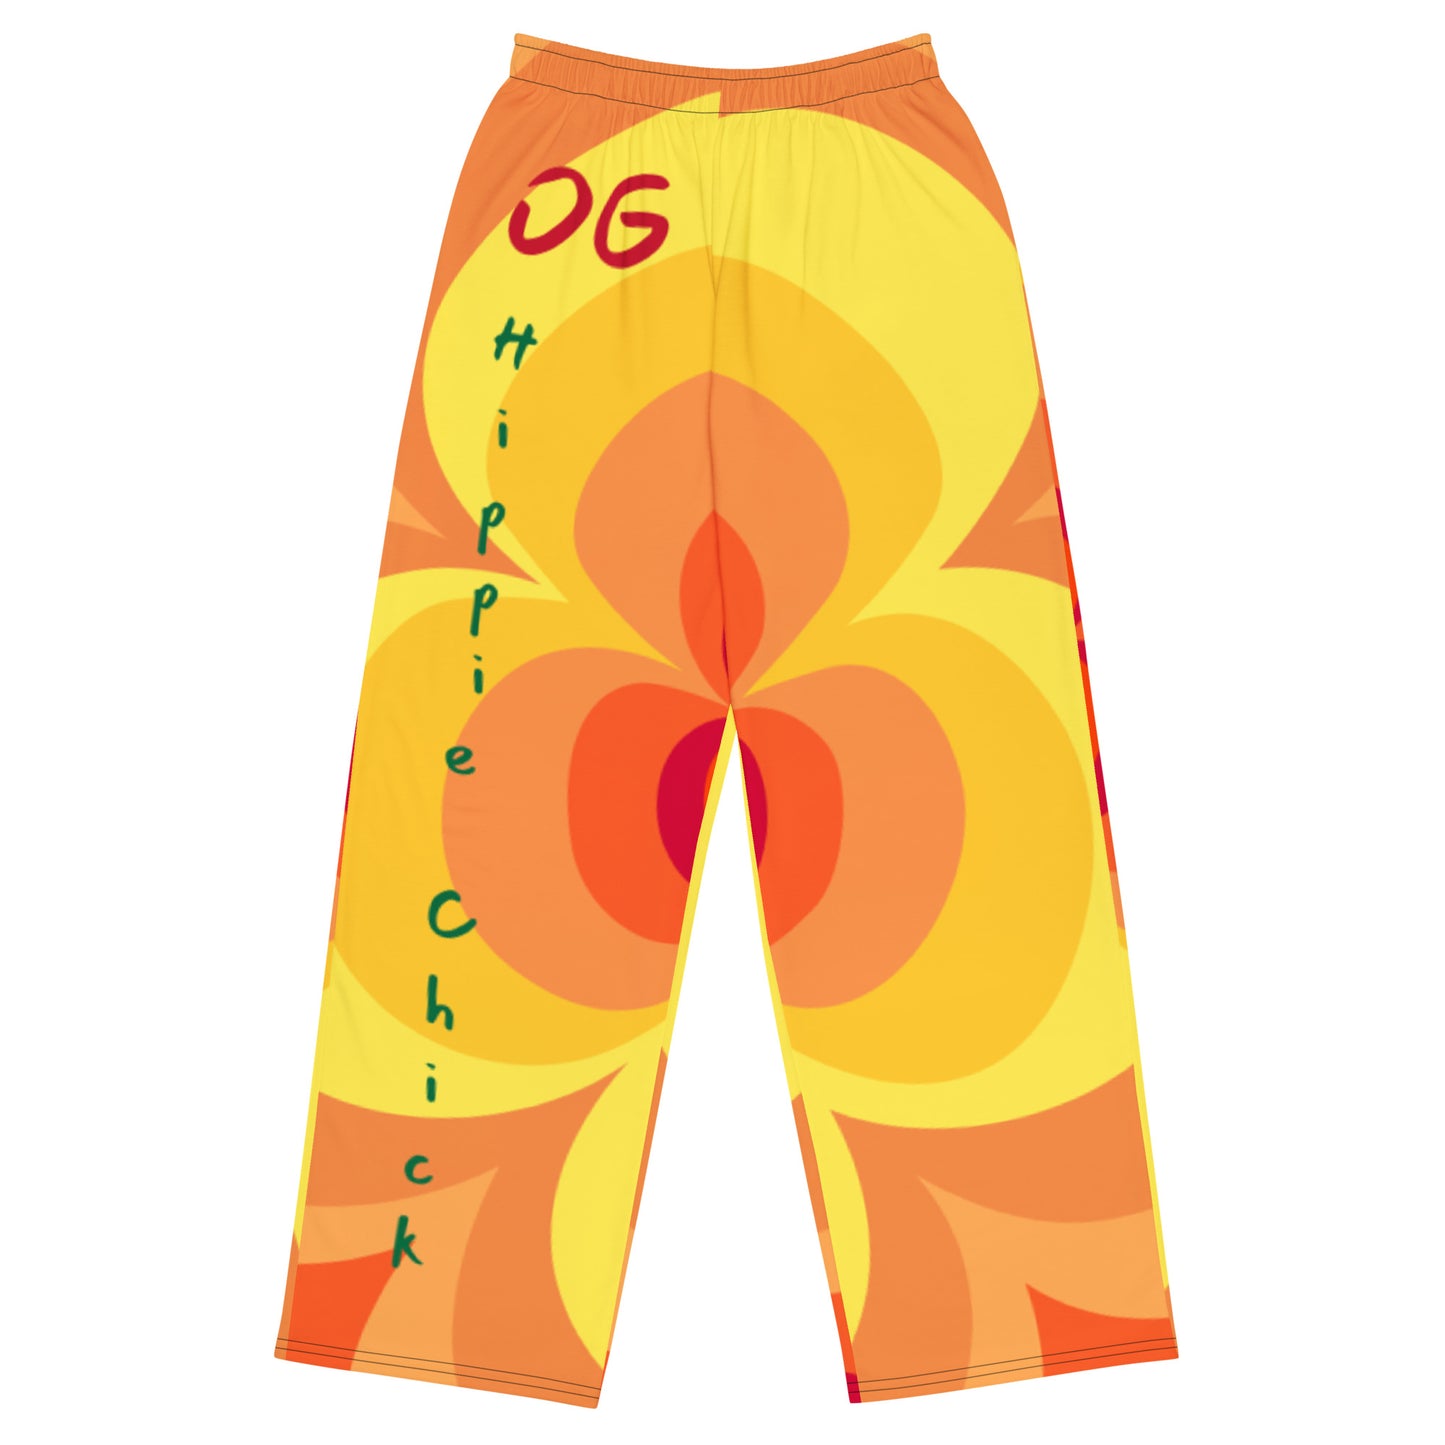 Sunny Flower 2 Unisex Pants - OG Hippie Chick